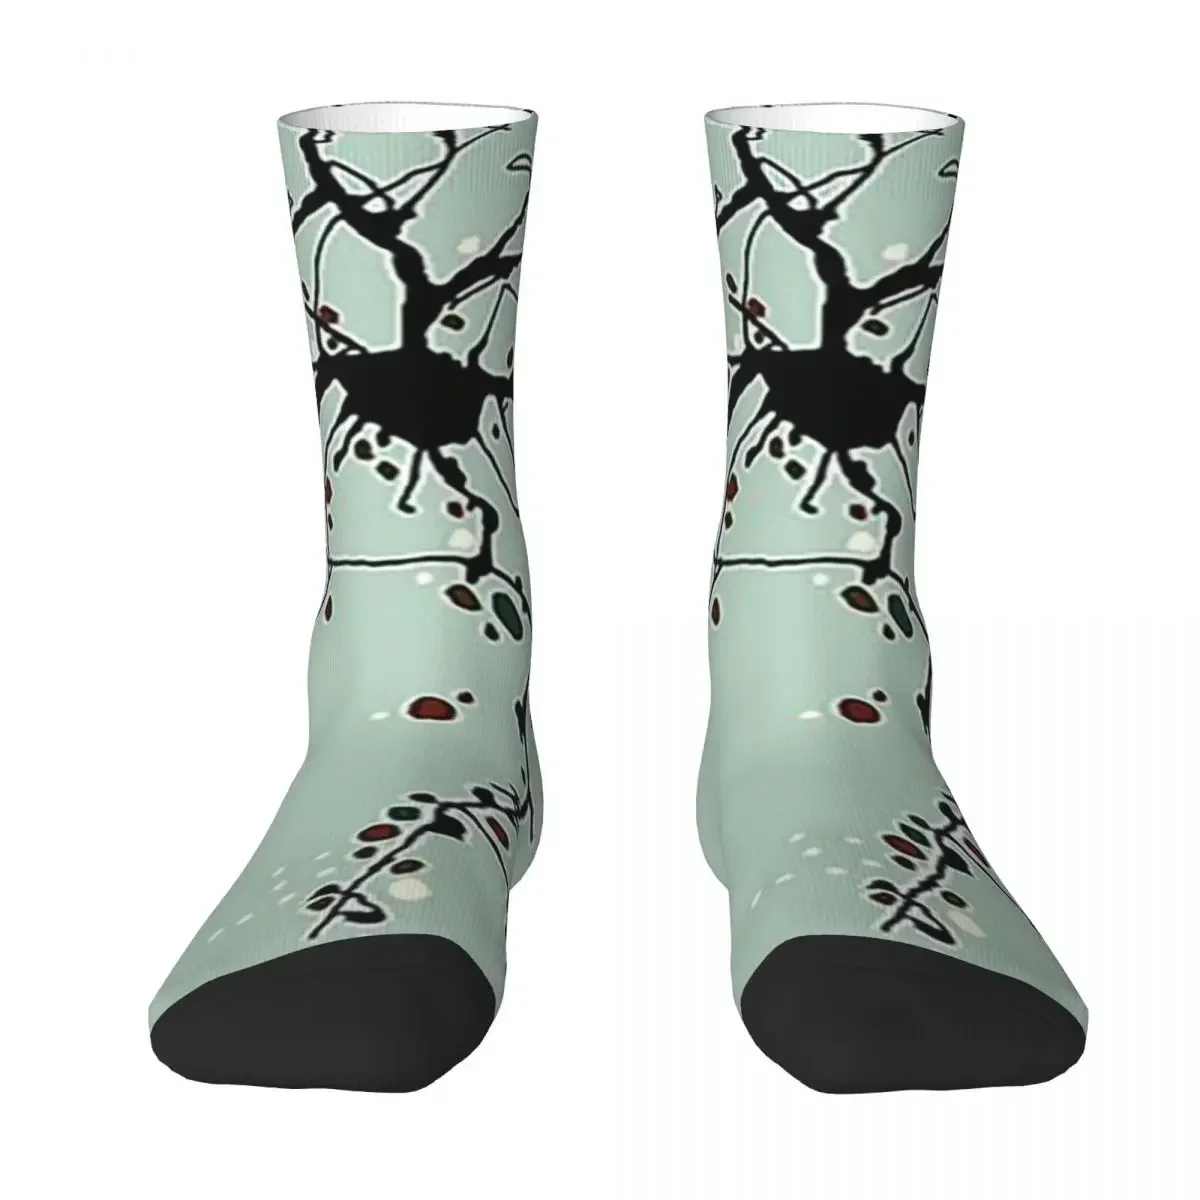 

Всесезонные короткие чулки, носки с нейронами в стиле Харадзюку, забавные длинные носки в стиле хип-хоп, аксессуары для мужчин и женщин, подарок на день рождения